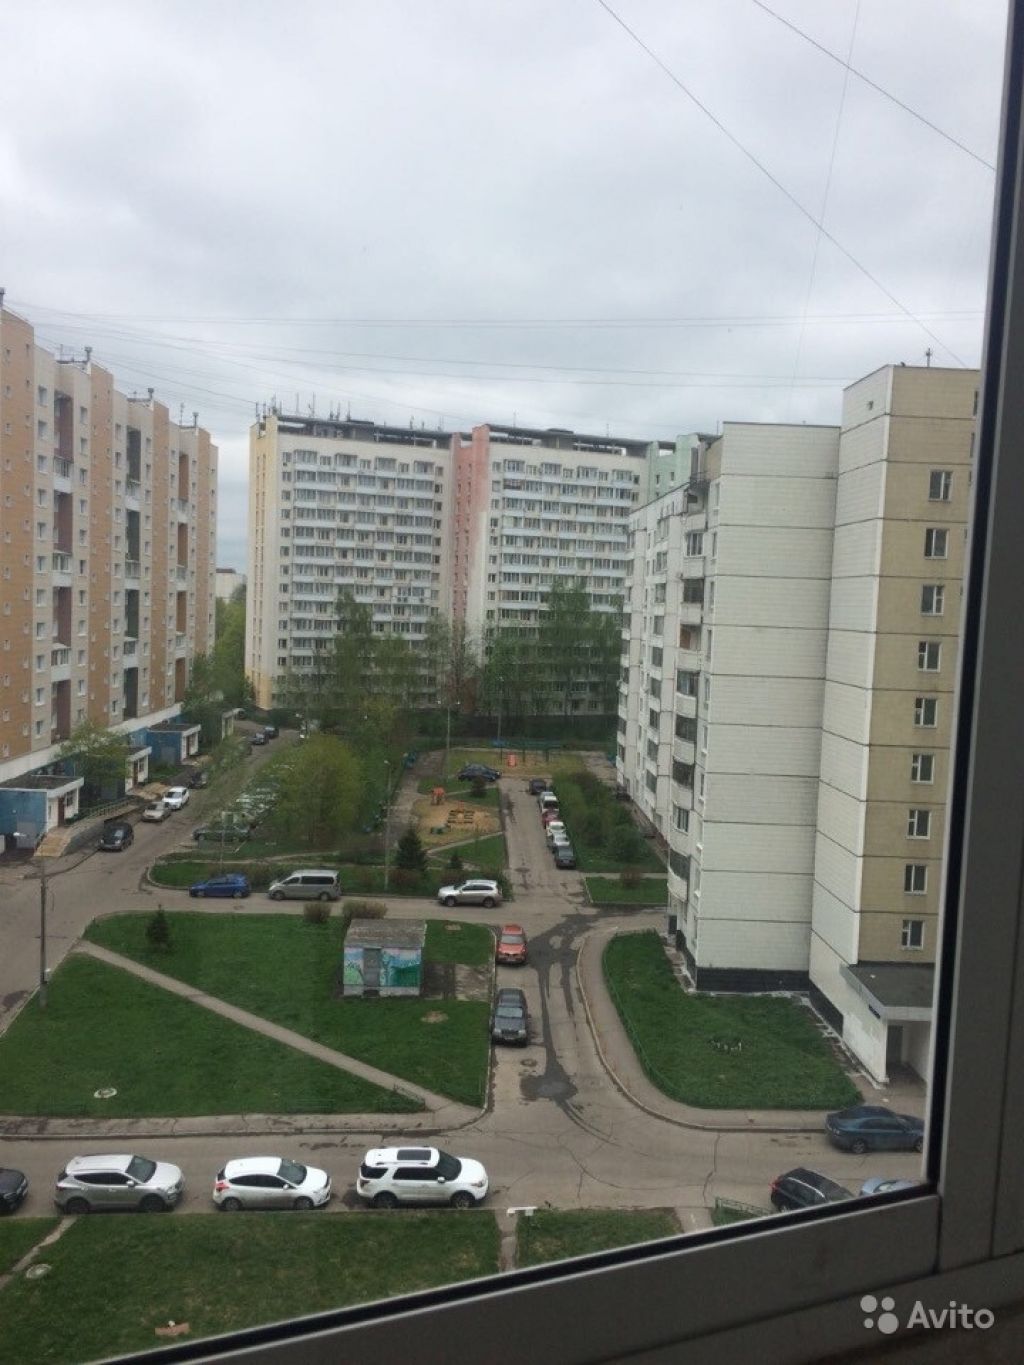 Сдам квартиру 1-к квартира 37 м² на 9 этаже 12-этажного блочного дома в Москве. Фото 1